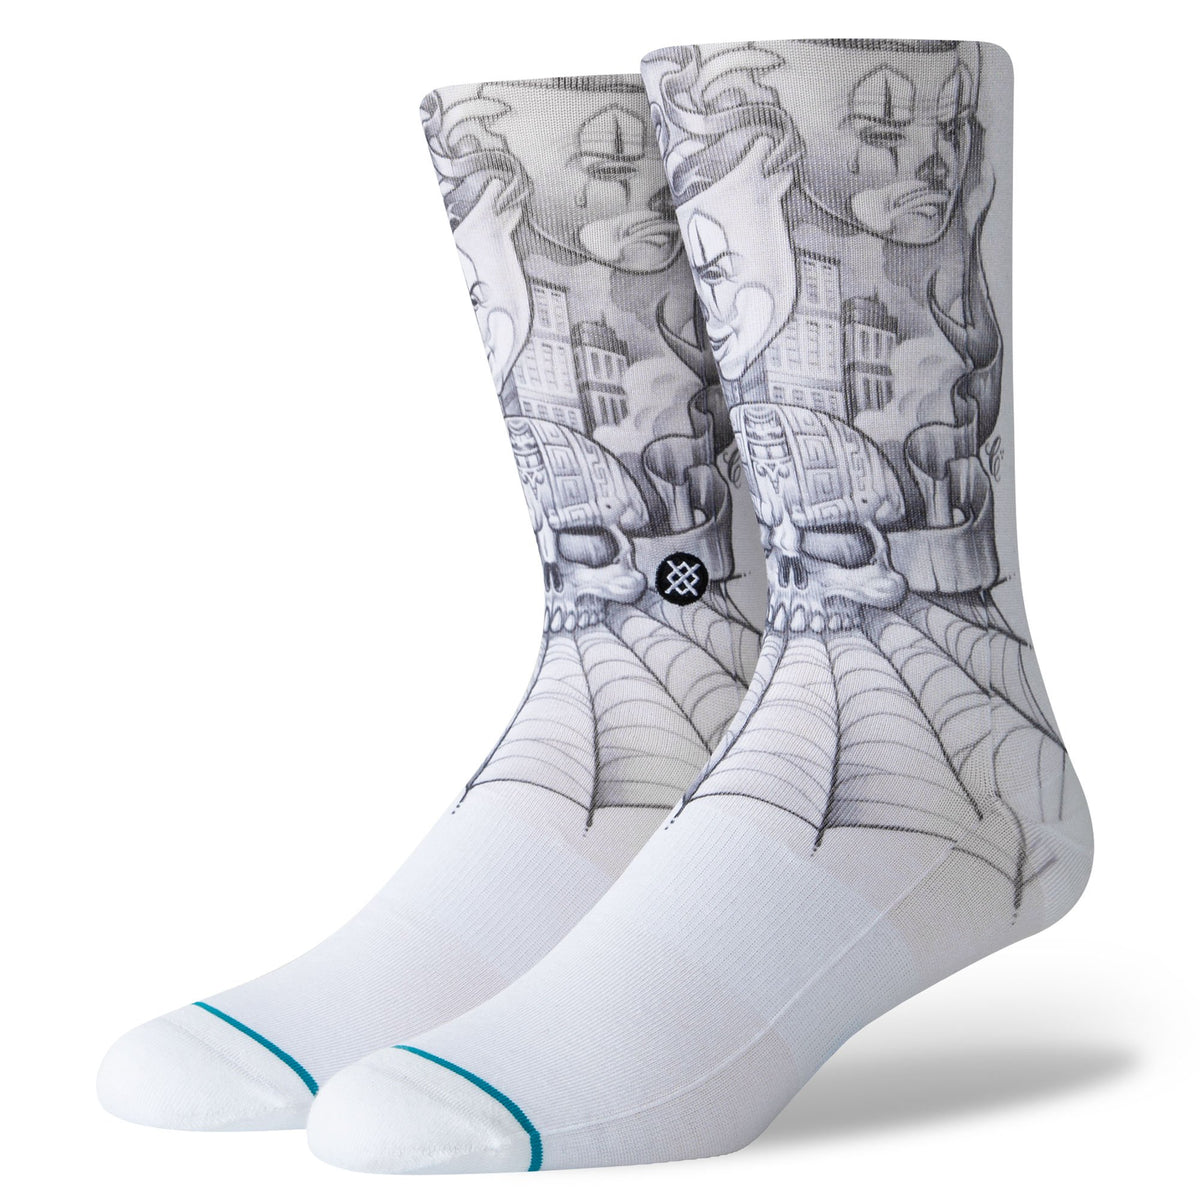 Stance x Mister Cartoon - Toonz Men's Socks, White